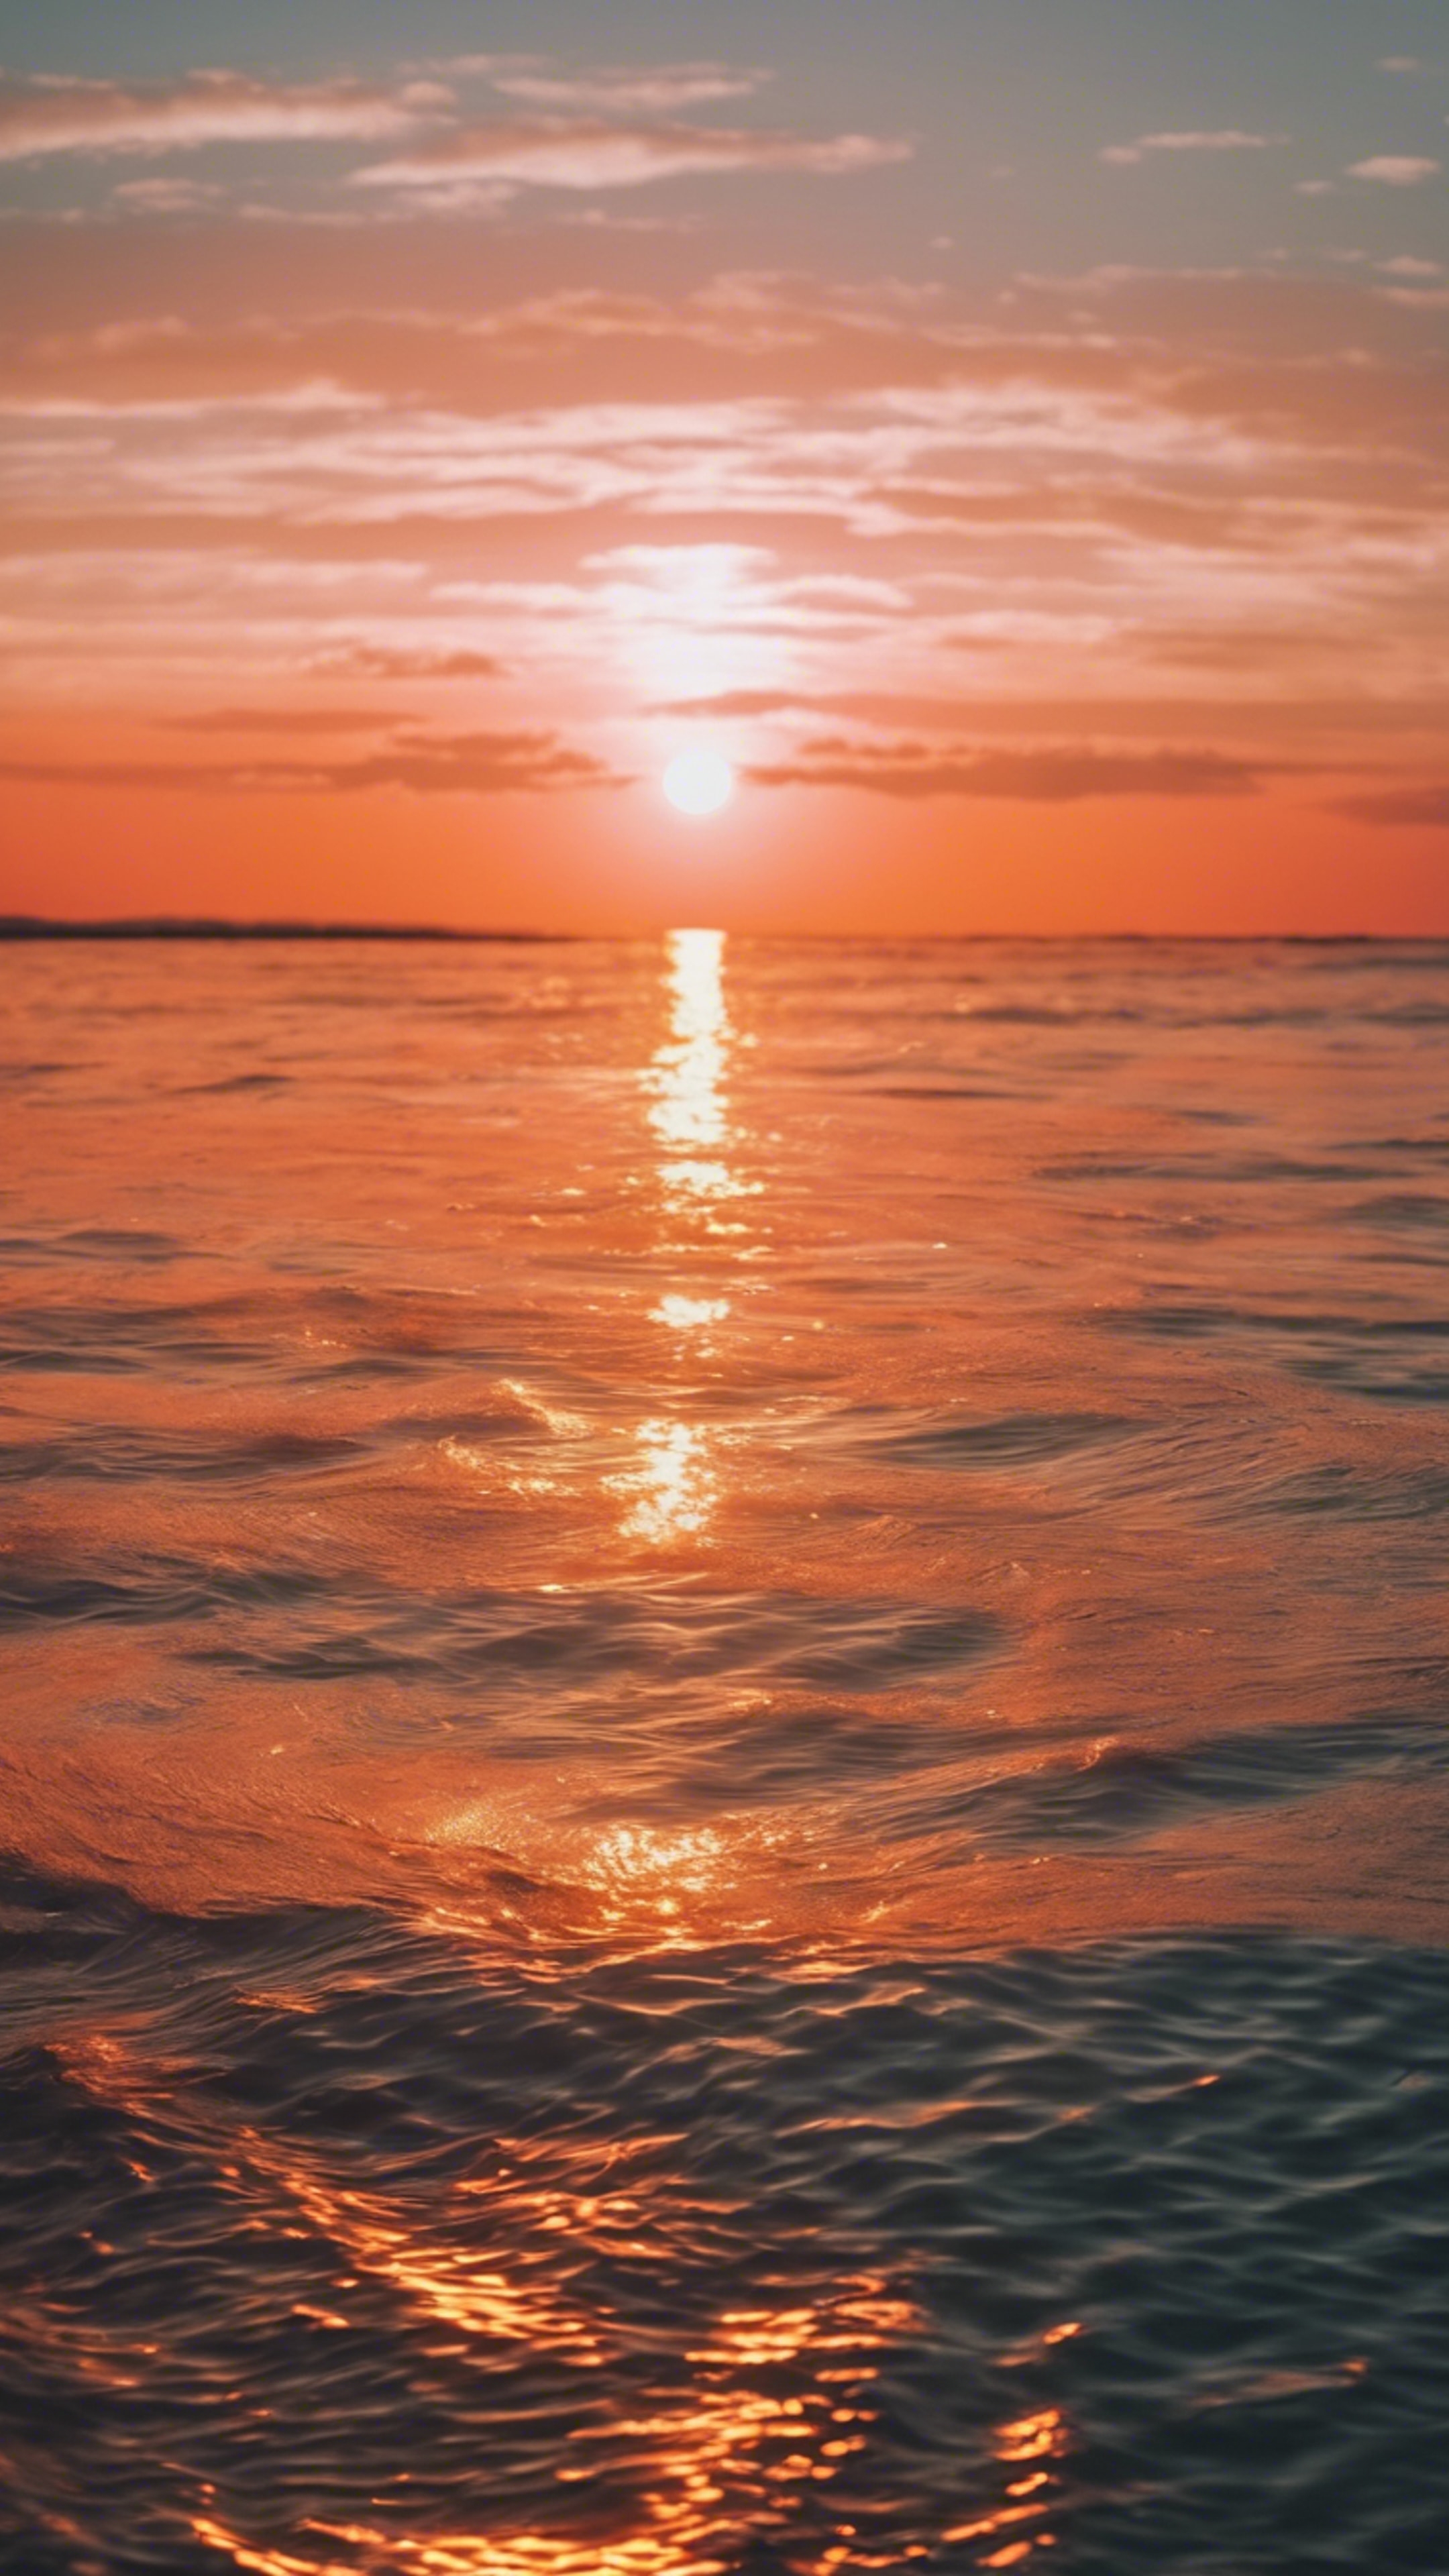 Bright neon orange sun setting over a calm sea.壁紙[6f90c626ce0243a7b617]